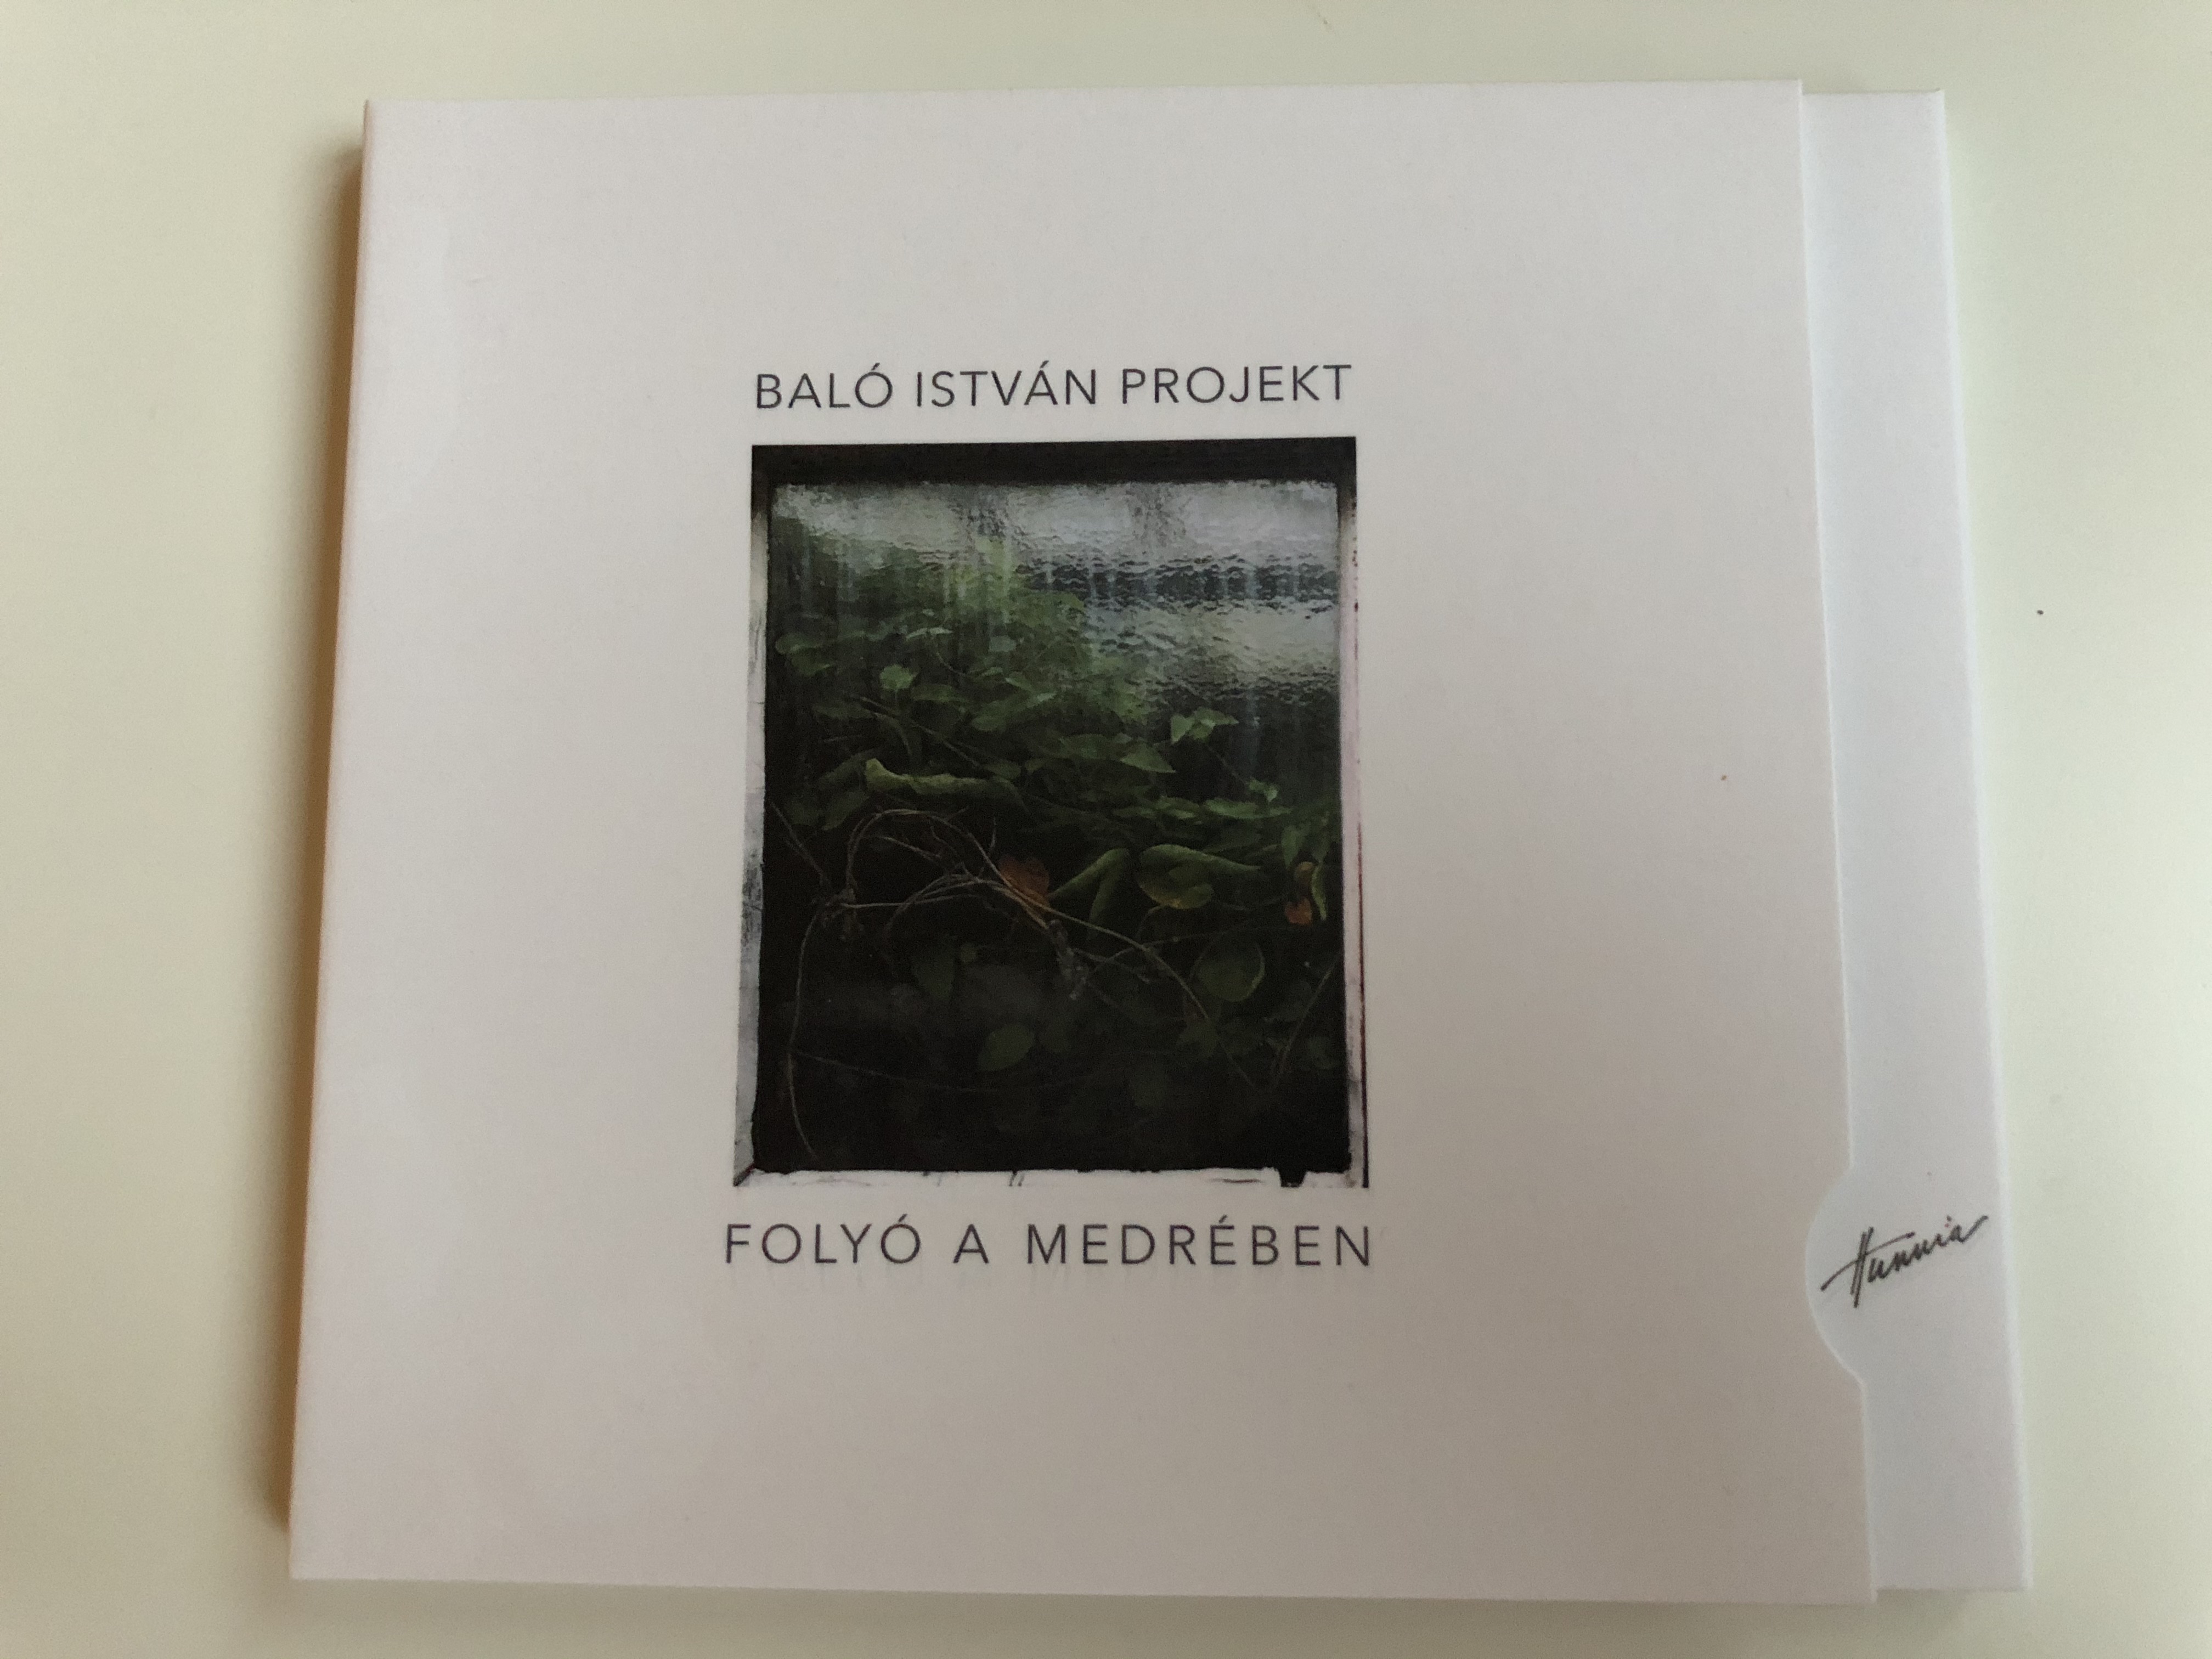 balo-istvan-projekt-folyo-a-medreben-hunnia-records-film-production-audio-cd-2017-hrcd1735-1-.jpg